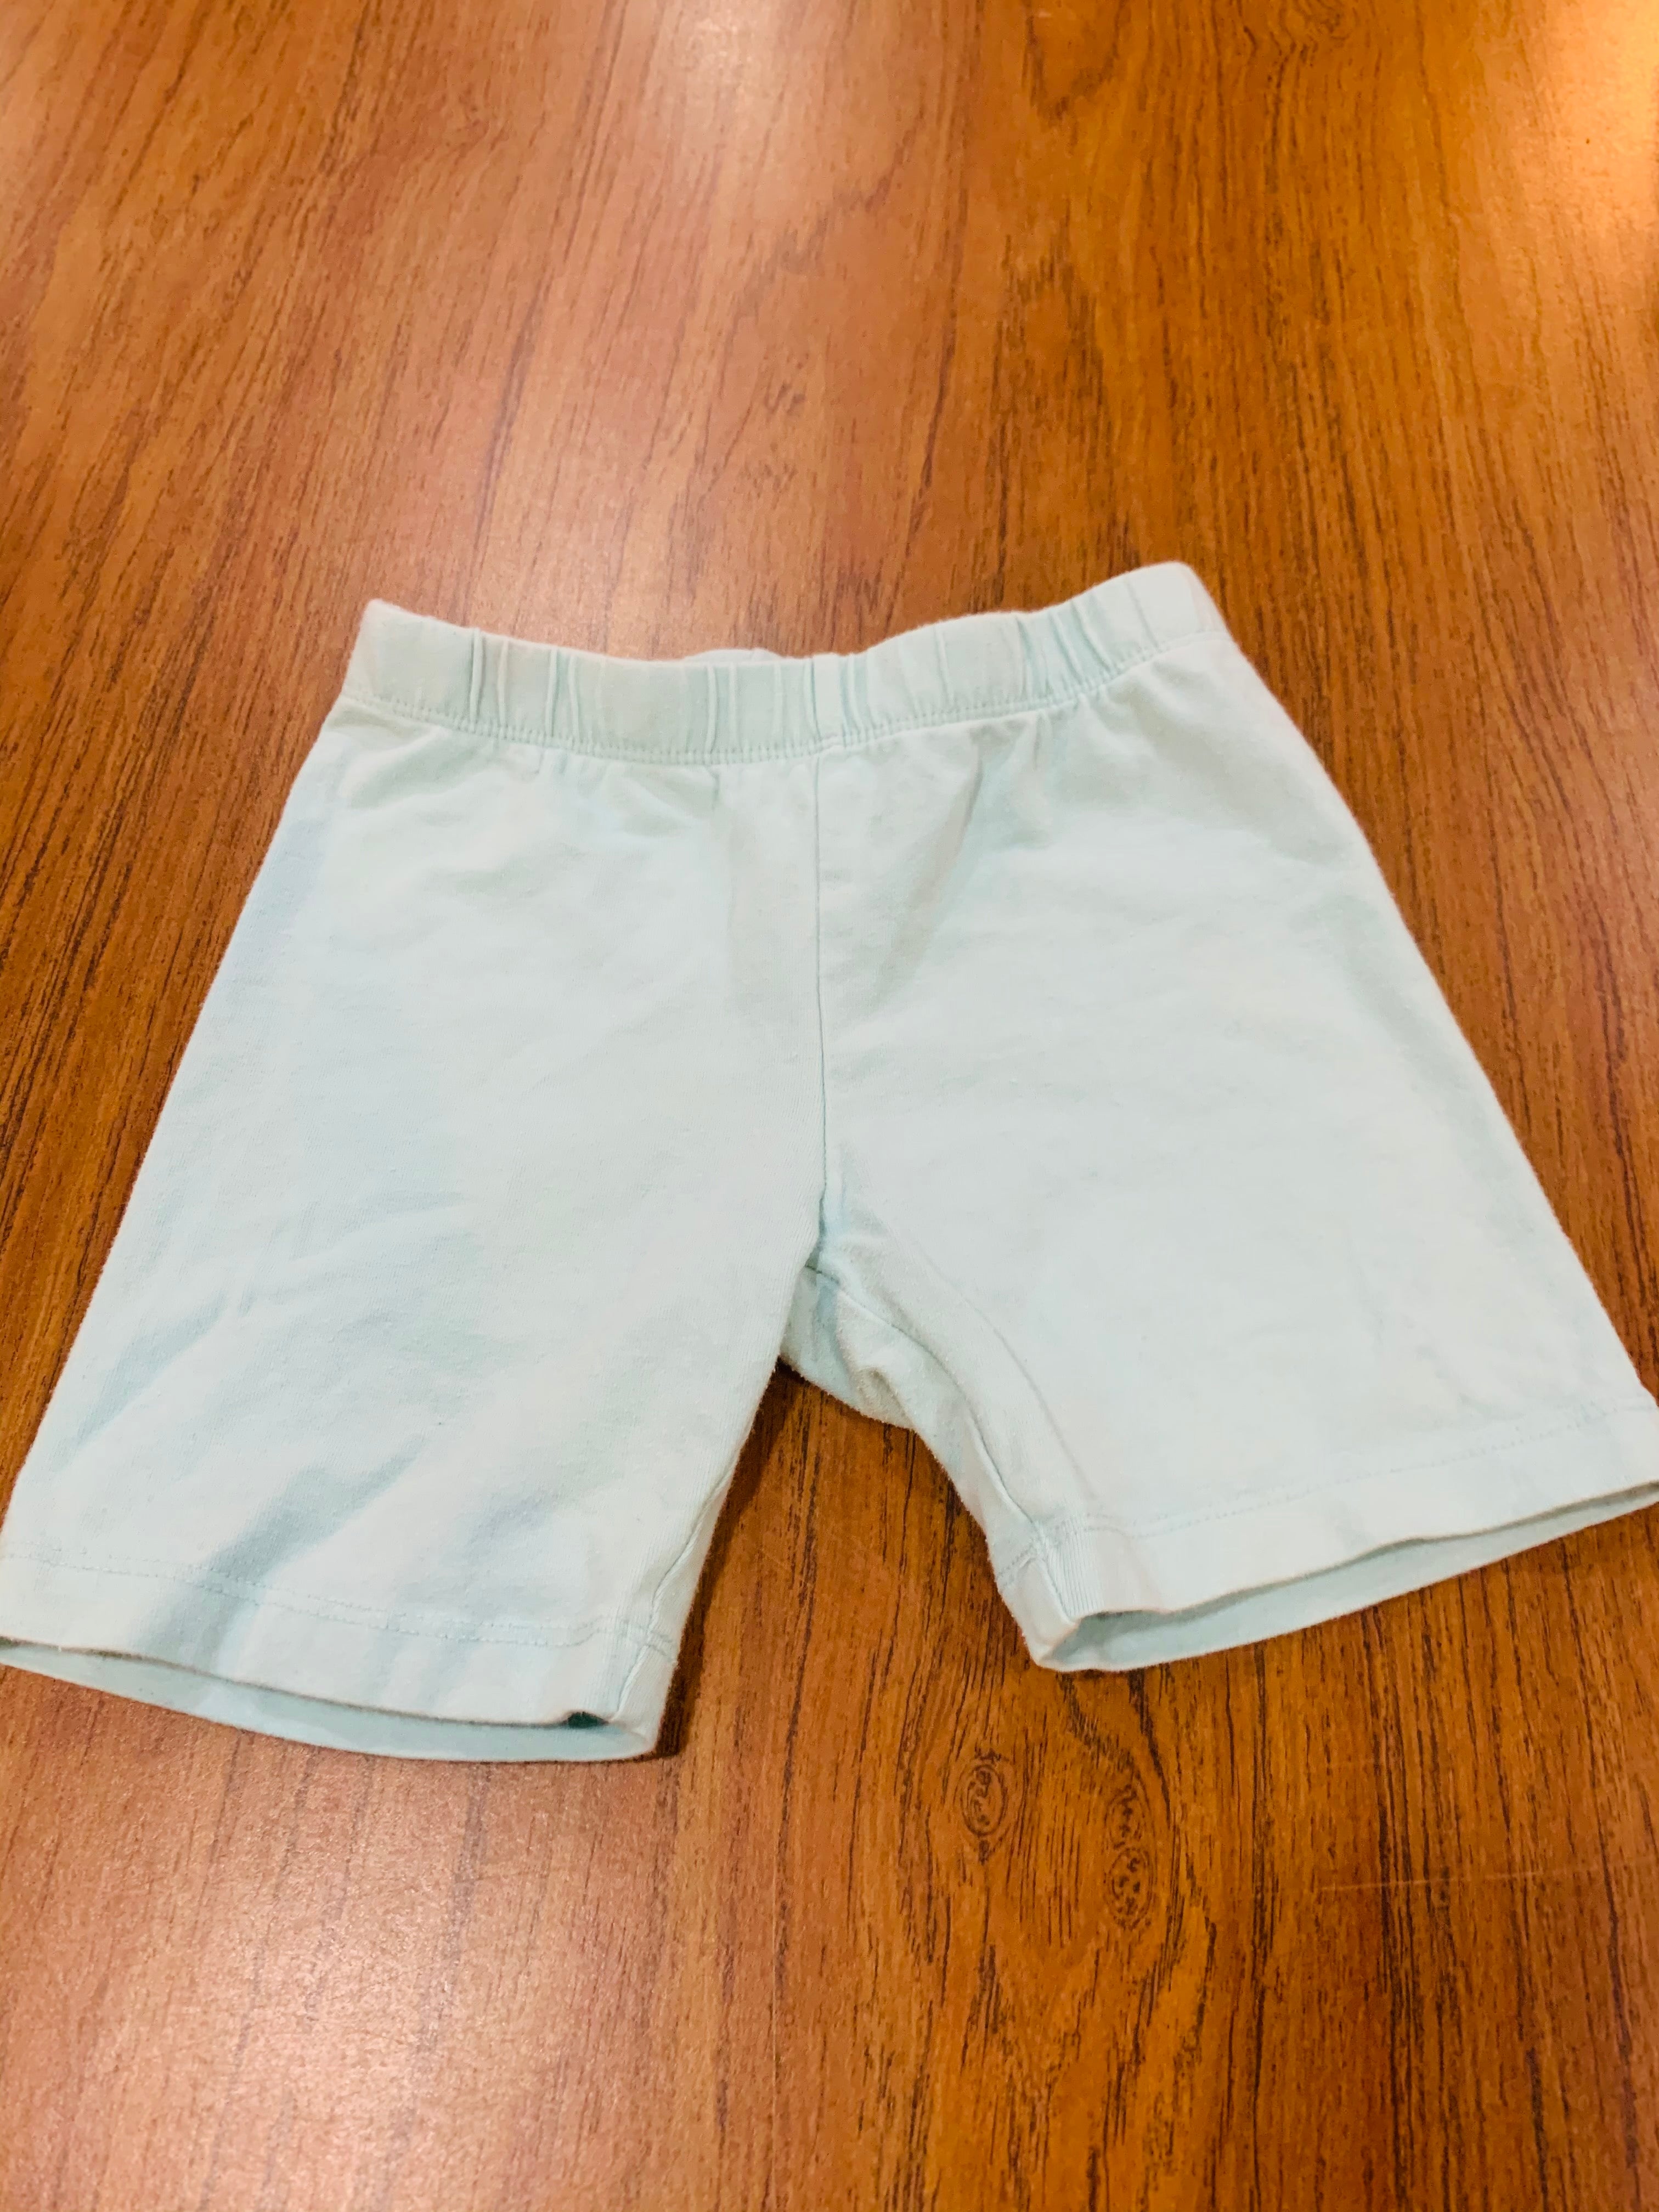 Resale light blue Gymboree shorts 5/6